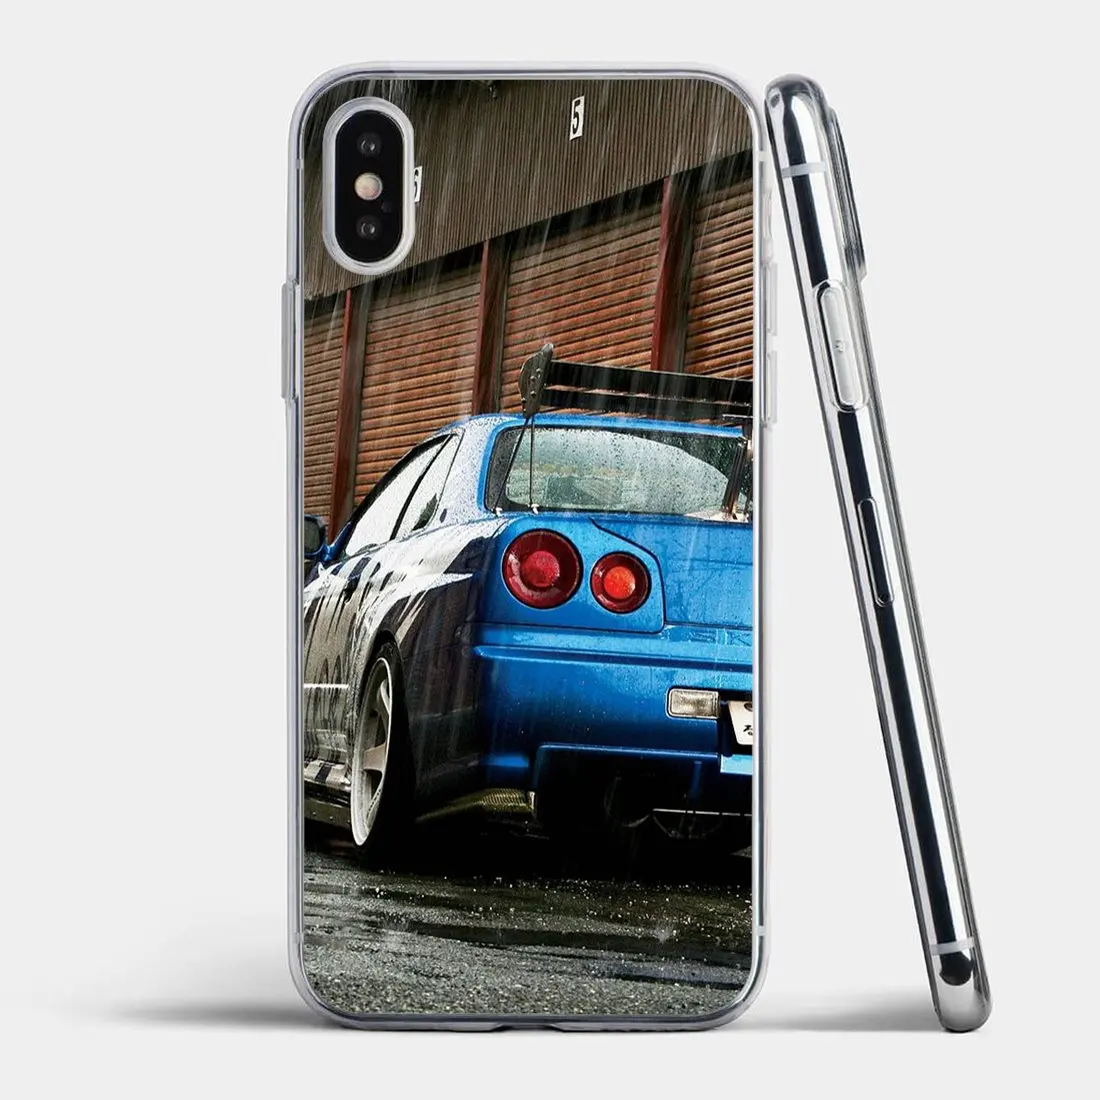 Luxury Car Nissan GTR For HTC U11 U12 One M7 M8 M9 M10 A9 X9 E9 Plus Desire 530 626 628 630 816 820 Transparent Soft Cases Cover images - 6